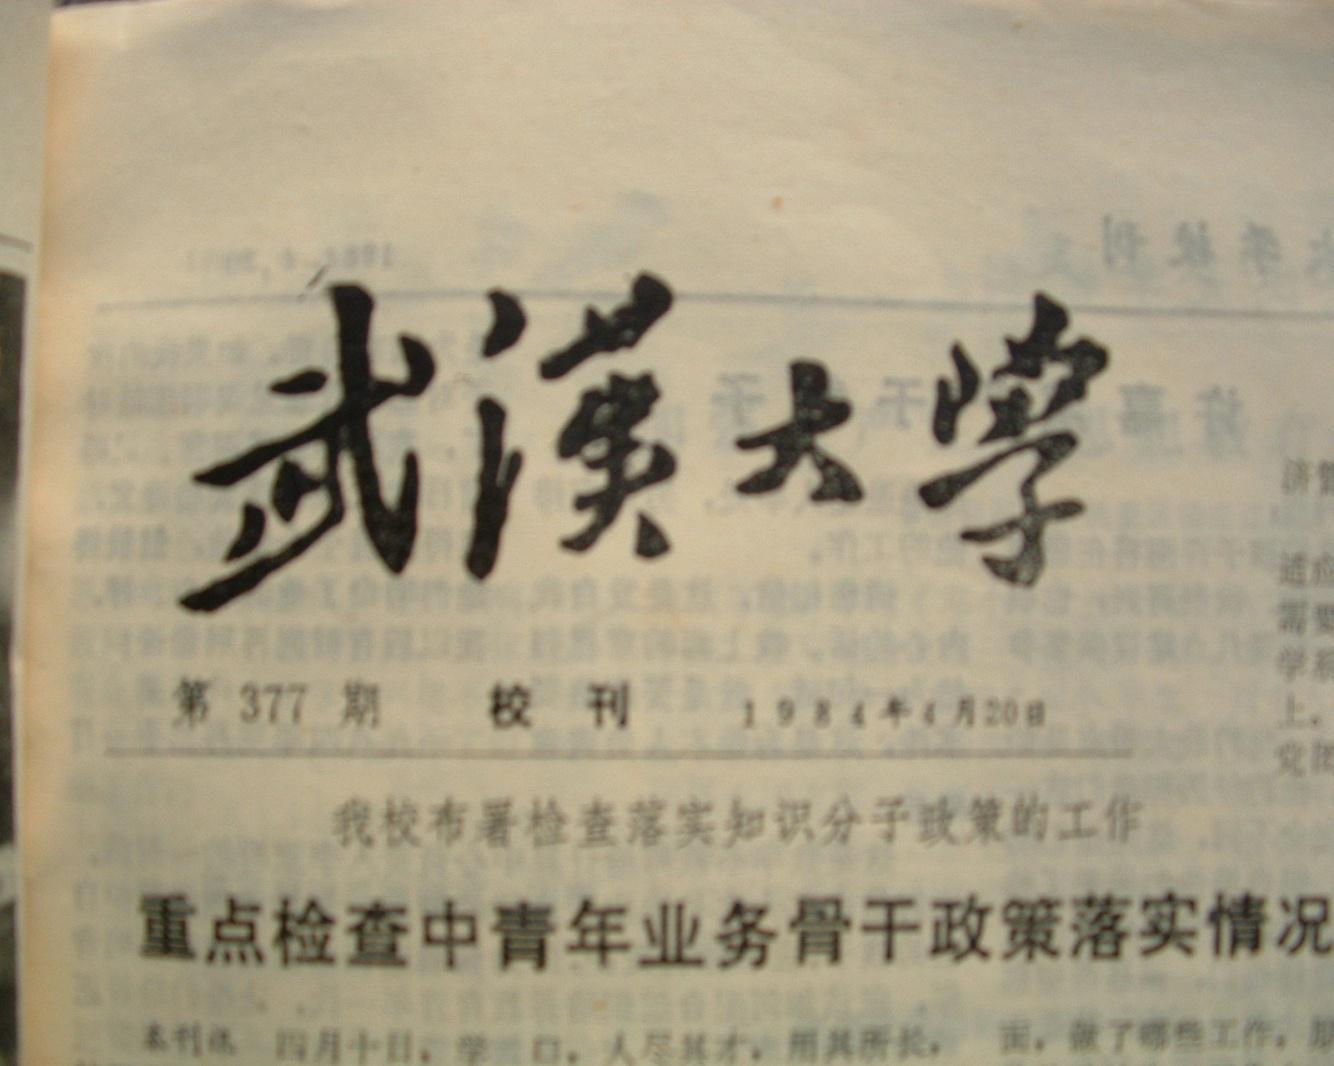 記者站成立之後的第一期武漢大學報